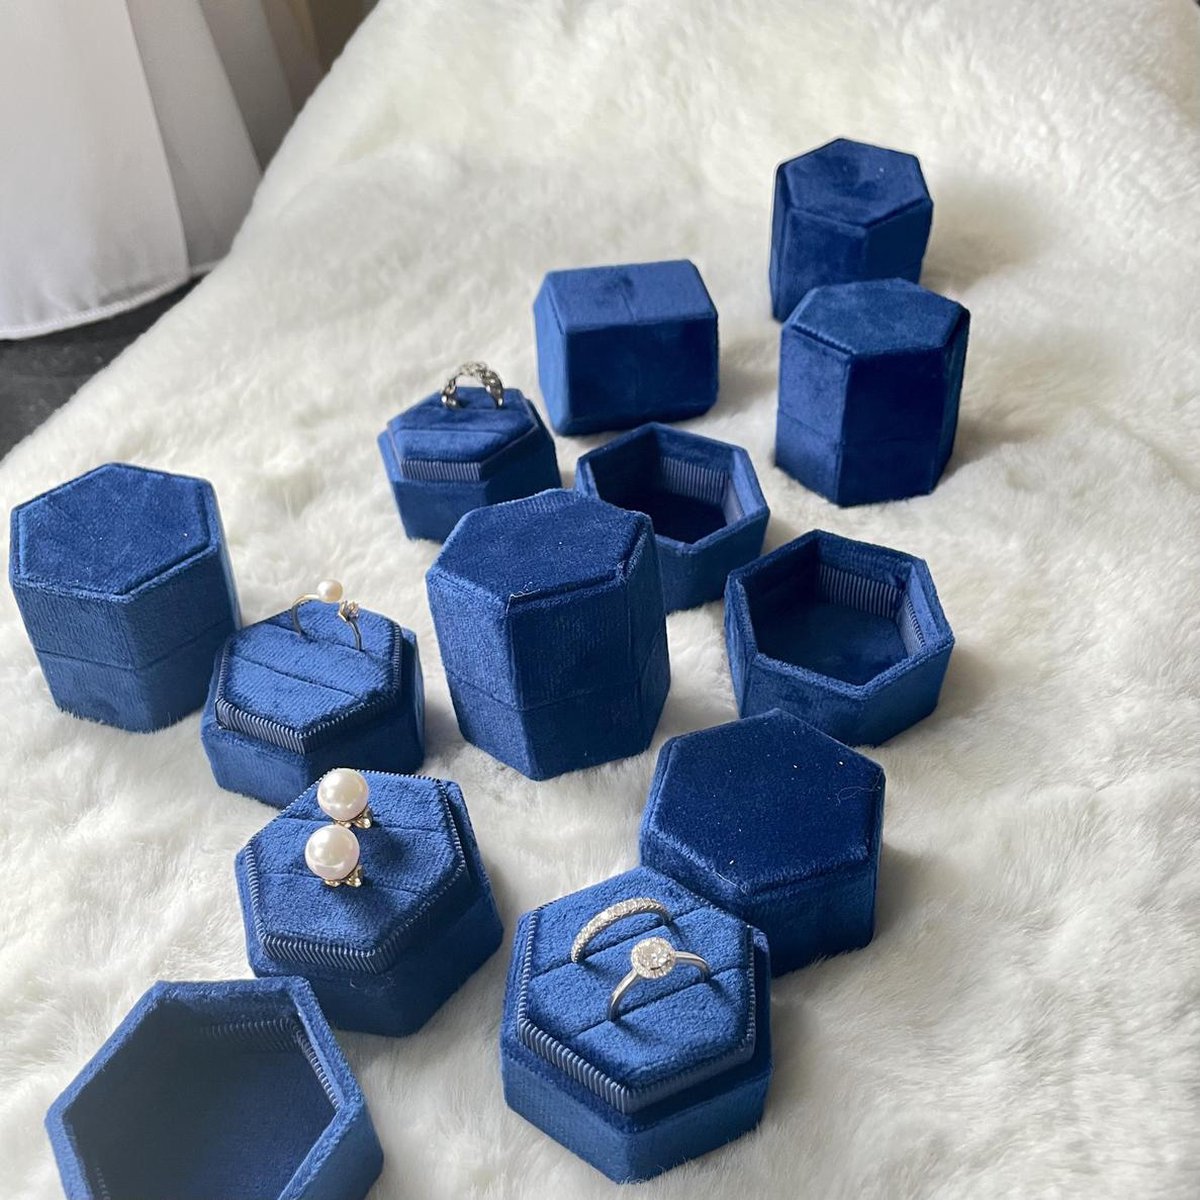 Vintage geïnspireerde Hexagon fluwelen trouwring doos-saffierblauw-voor 2 rings